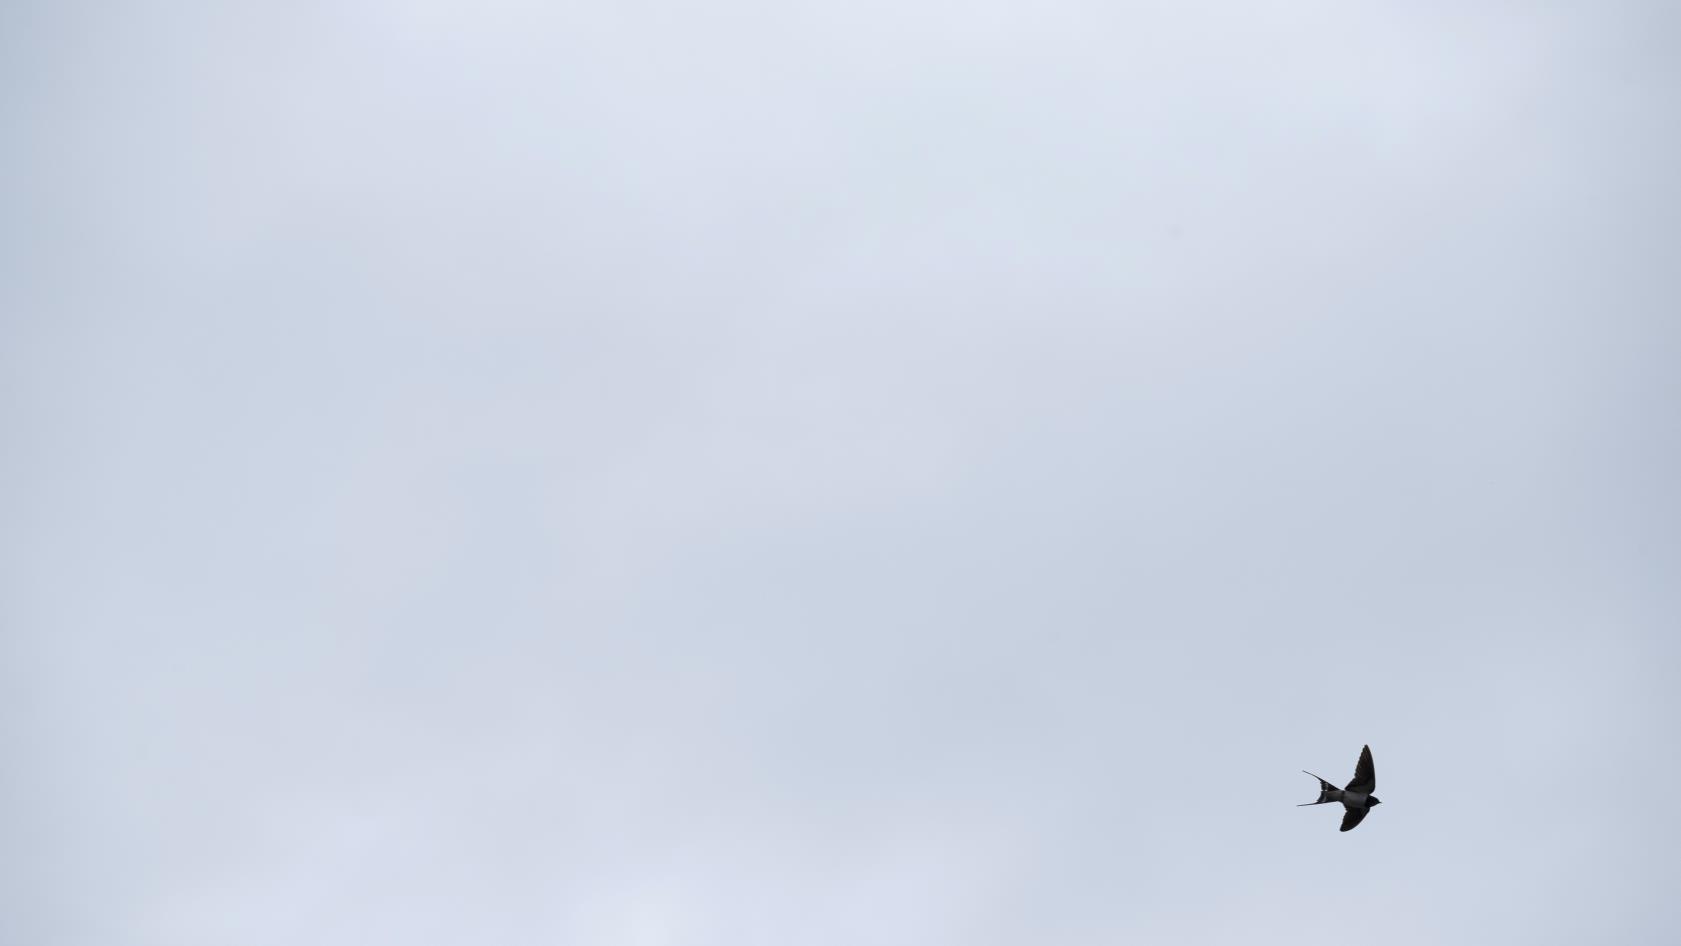 En svala svävar i en grå himmel.